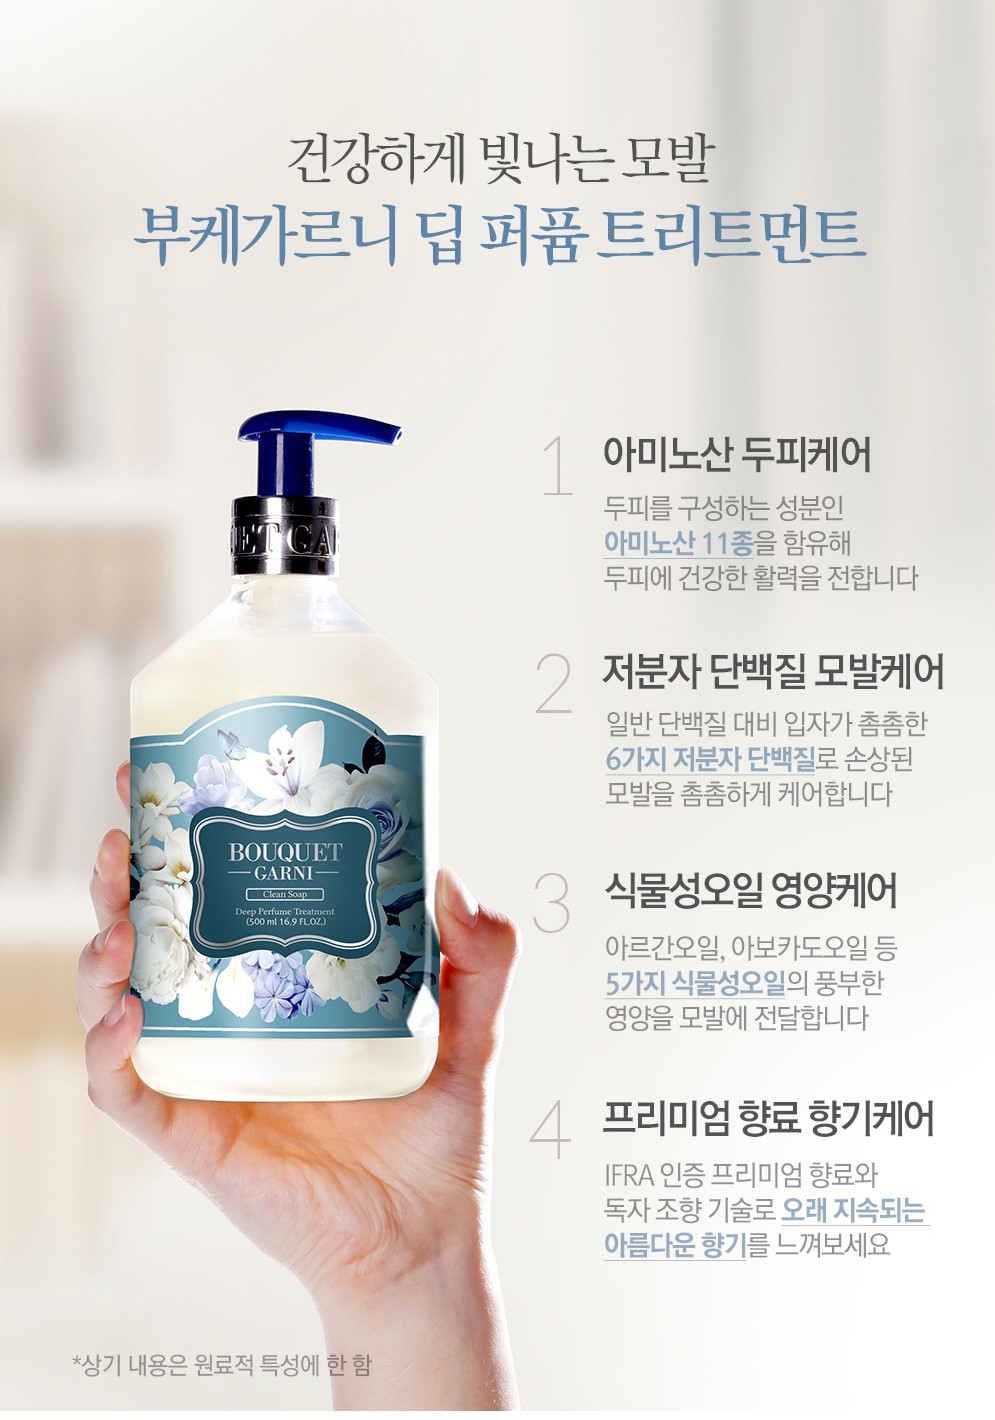 韓國食品-[Bouquet] Garni 洗頭水(潔淨肥皂) 500ml